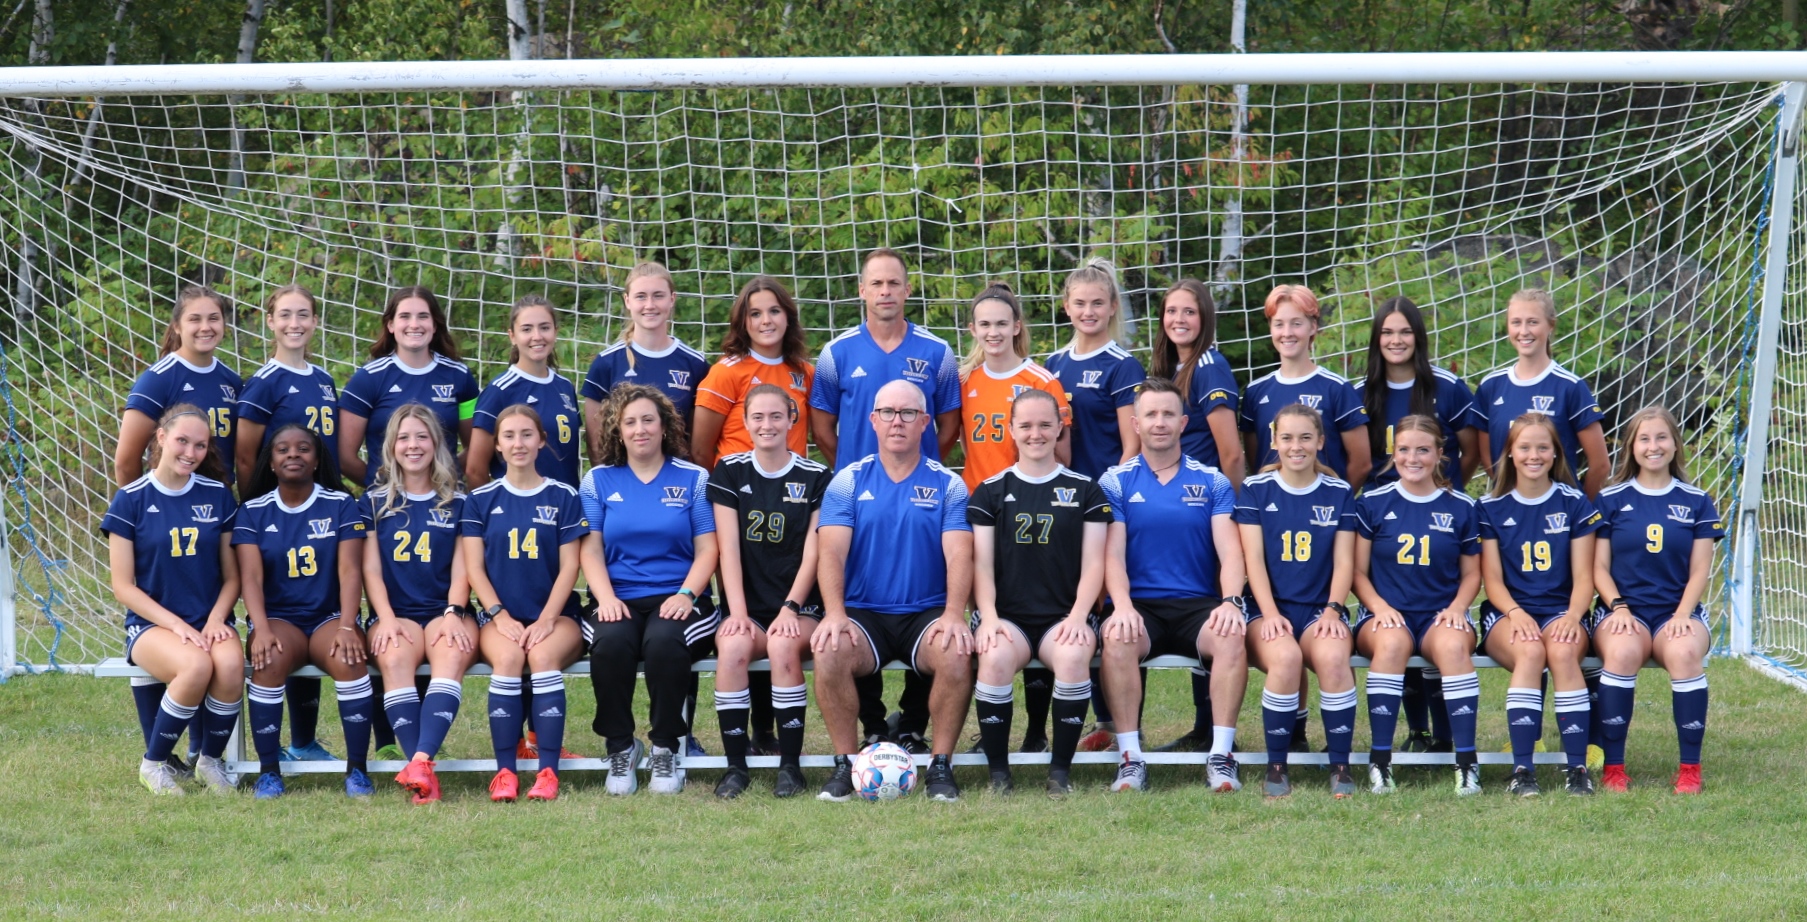 Women's soccer team photo.